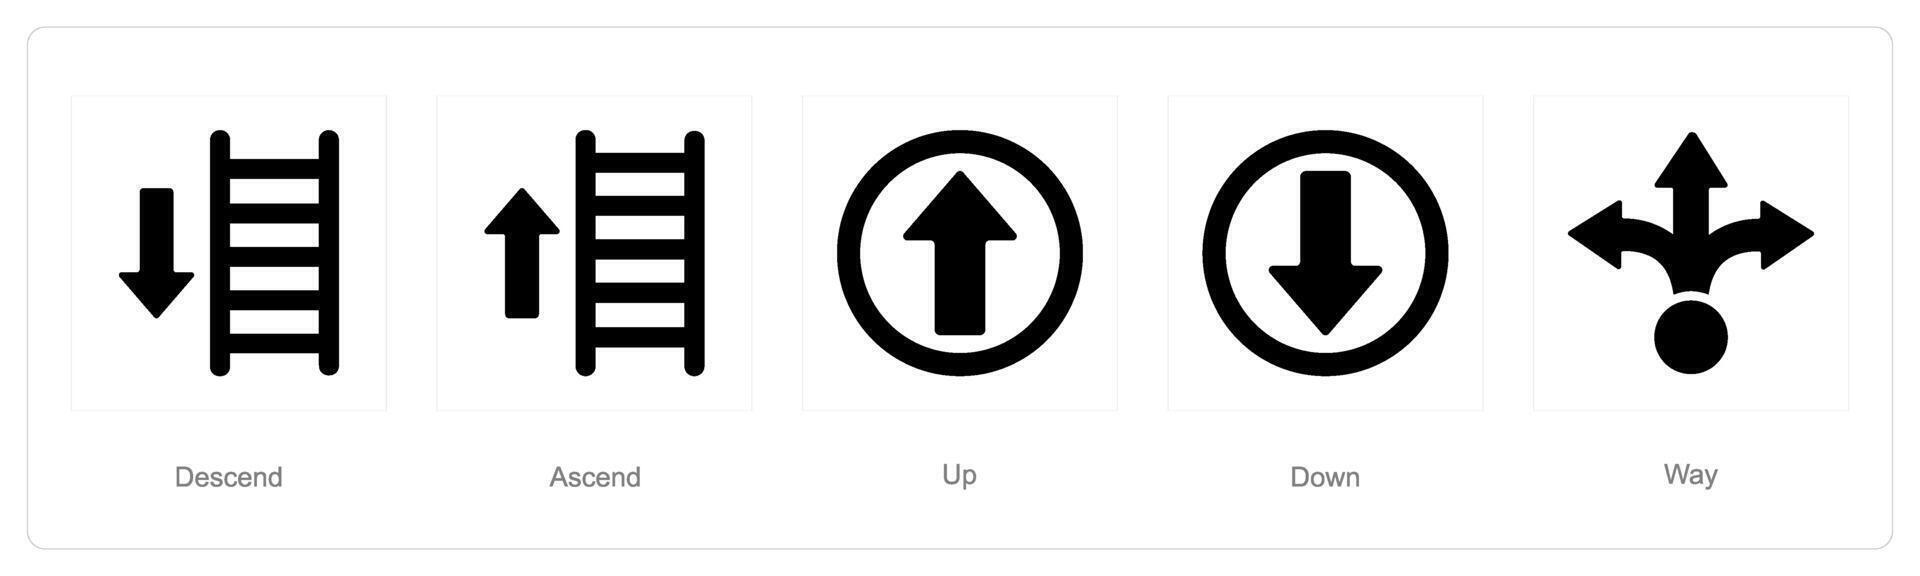 en uppsättning av 5 riktning ikoner som sjunka, stiga, upp vektor